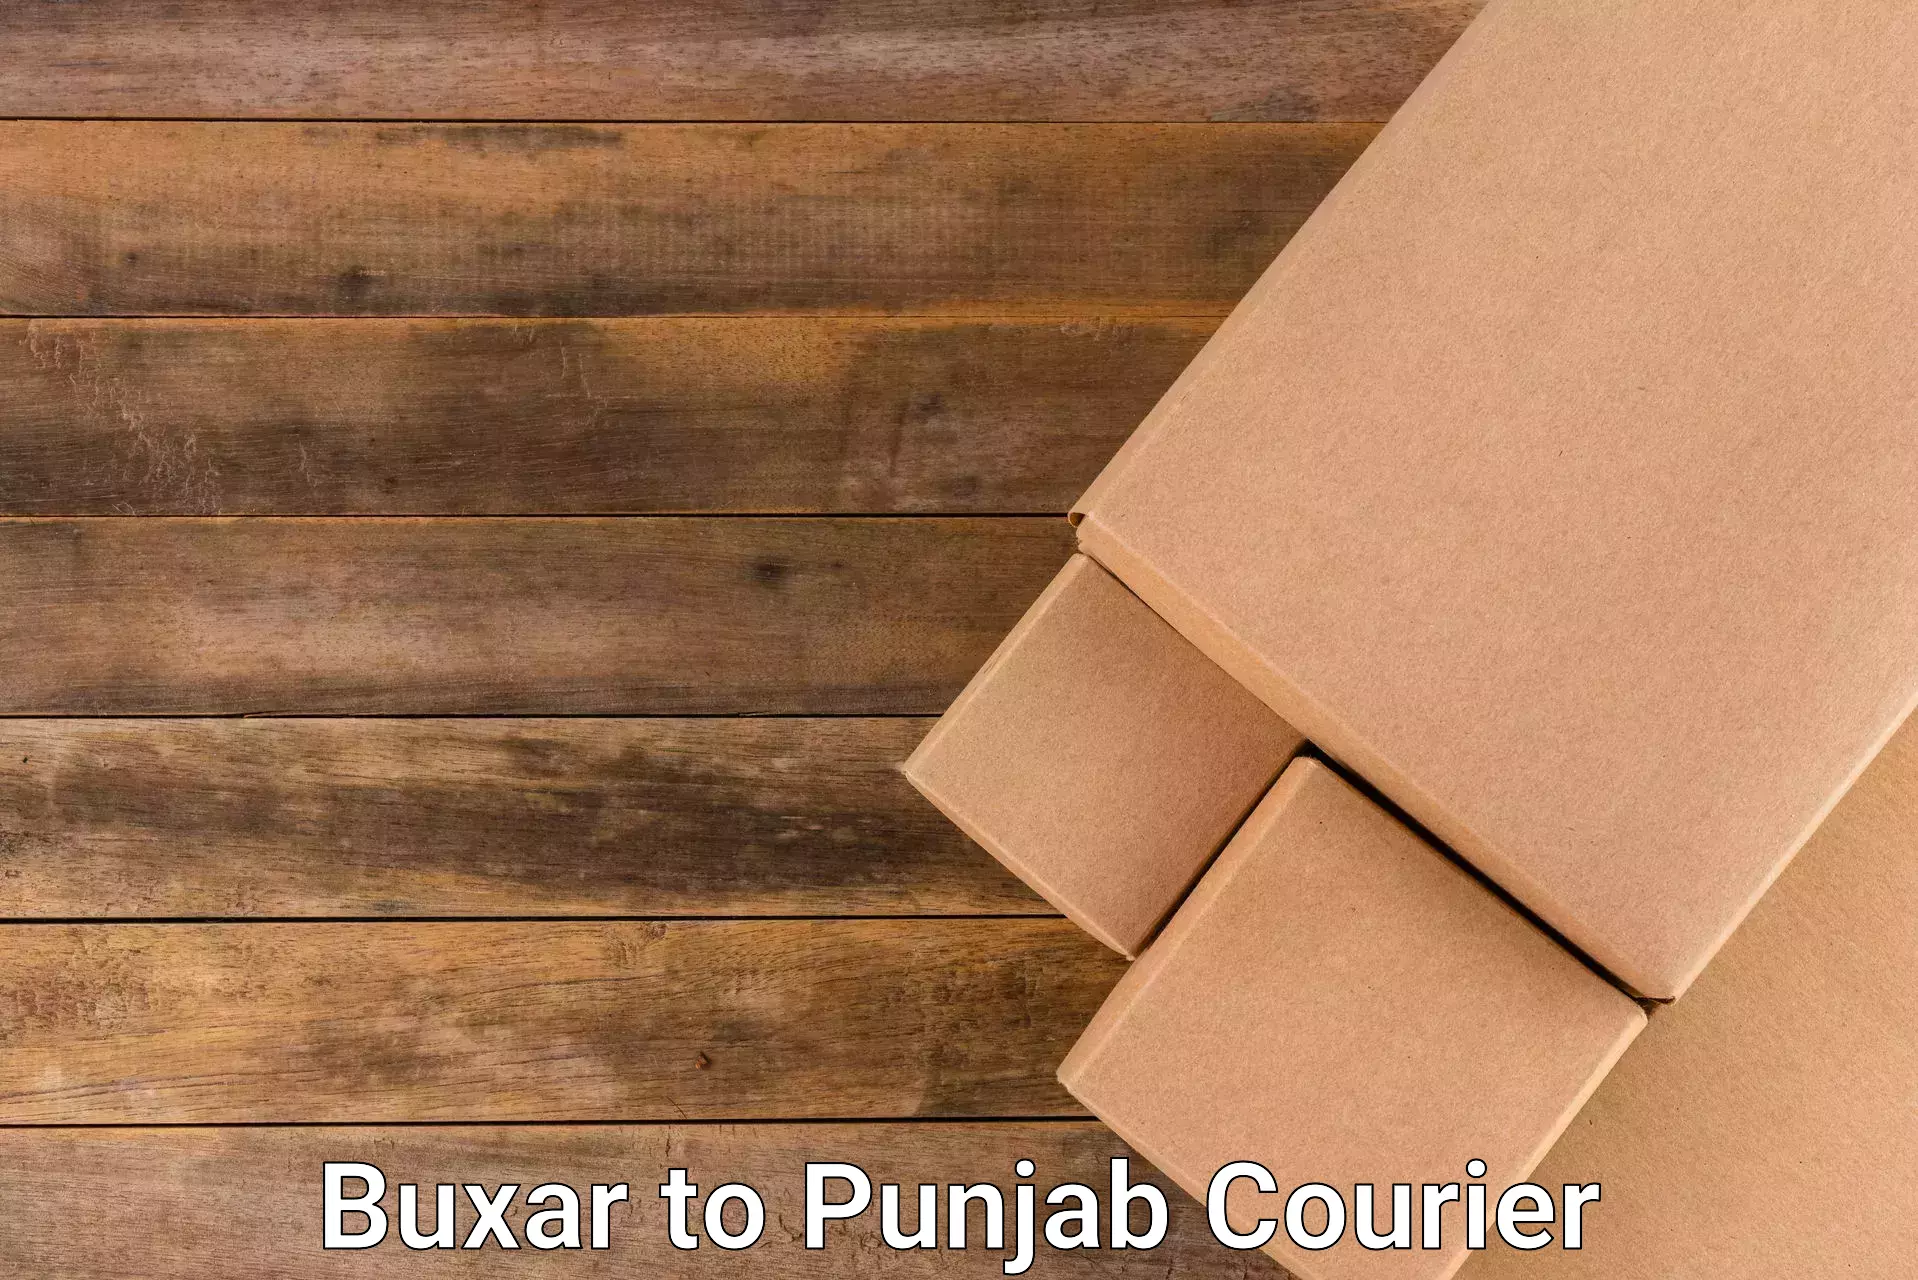 Bulk courier orders Buxar to Muktsar